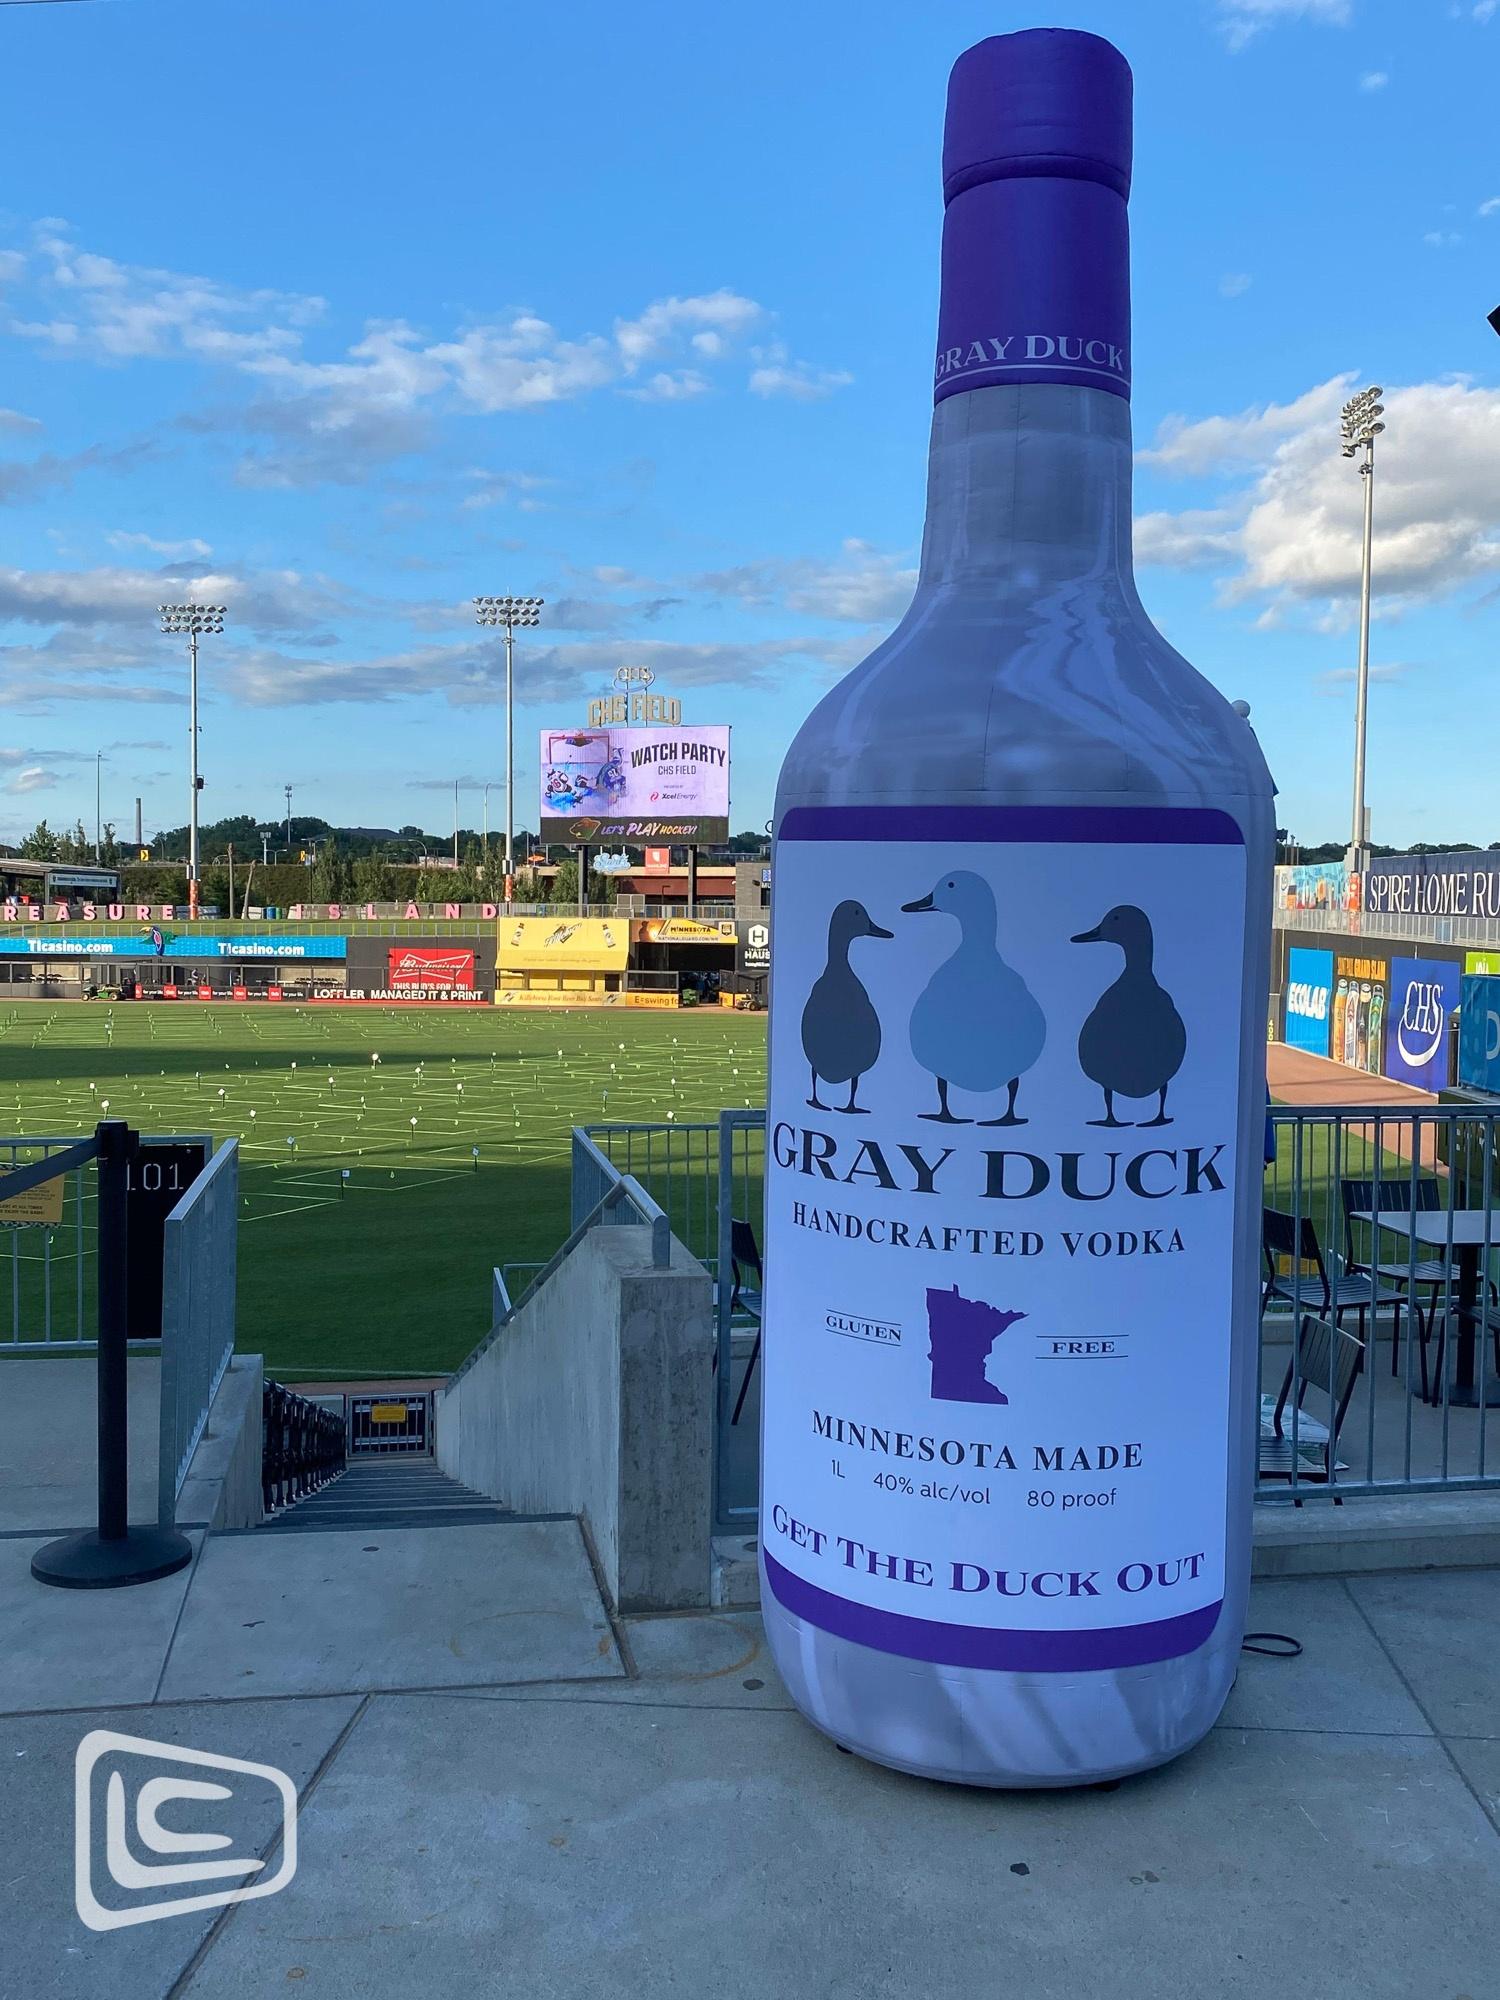 Gray Duck Vodka Bottle at Baseball Game